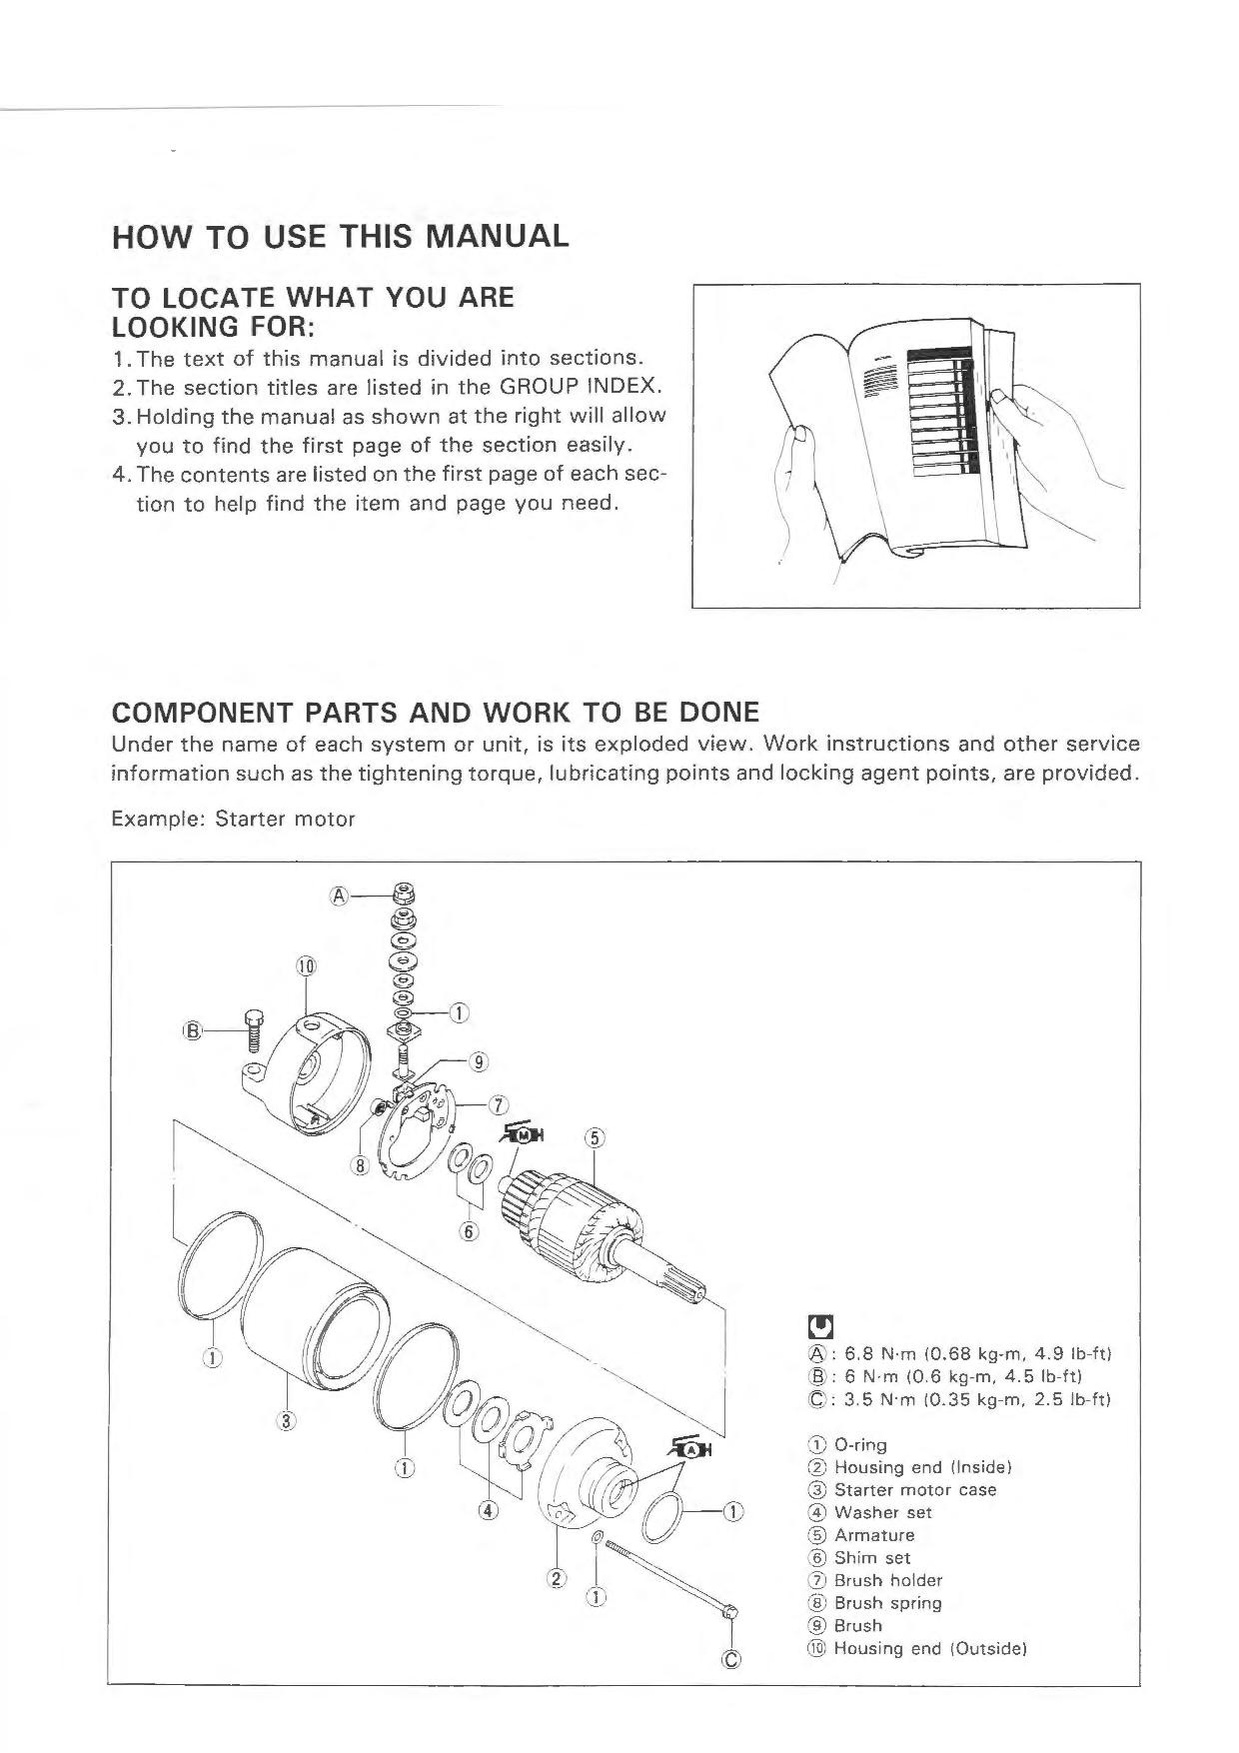 File:Suzuki GSX-R600 SRAD 96-00 Service Manual.pdf